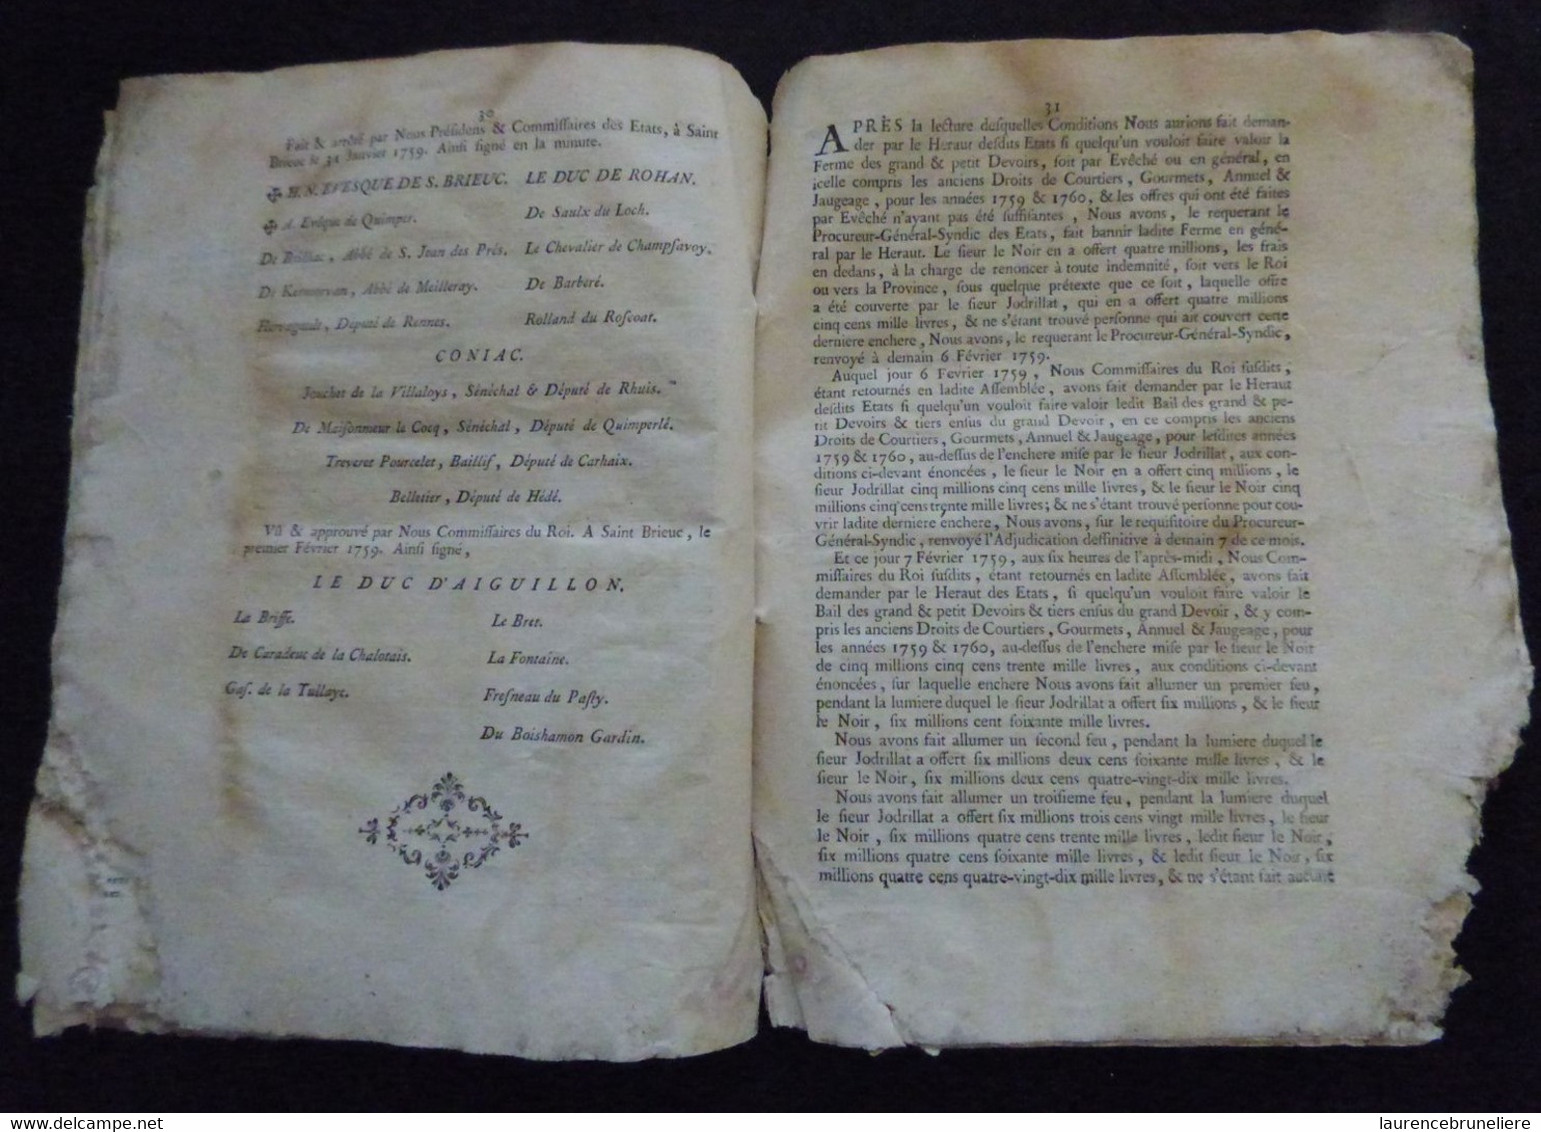 BAIL GENERAL DES DEVOIRS CONSENTI EN LA VILLE DE SAINT-BRIEUC LE 7 FEVRIER 1759 SUR PAPIER PARCHEMIN - Documents Historiques